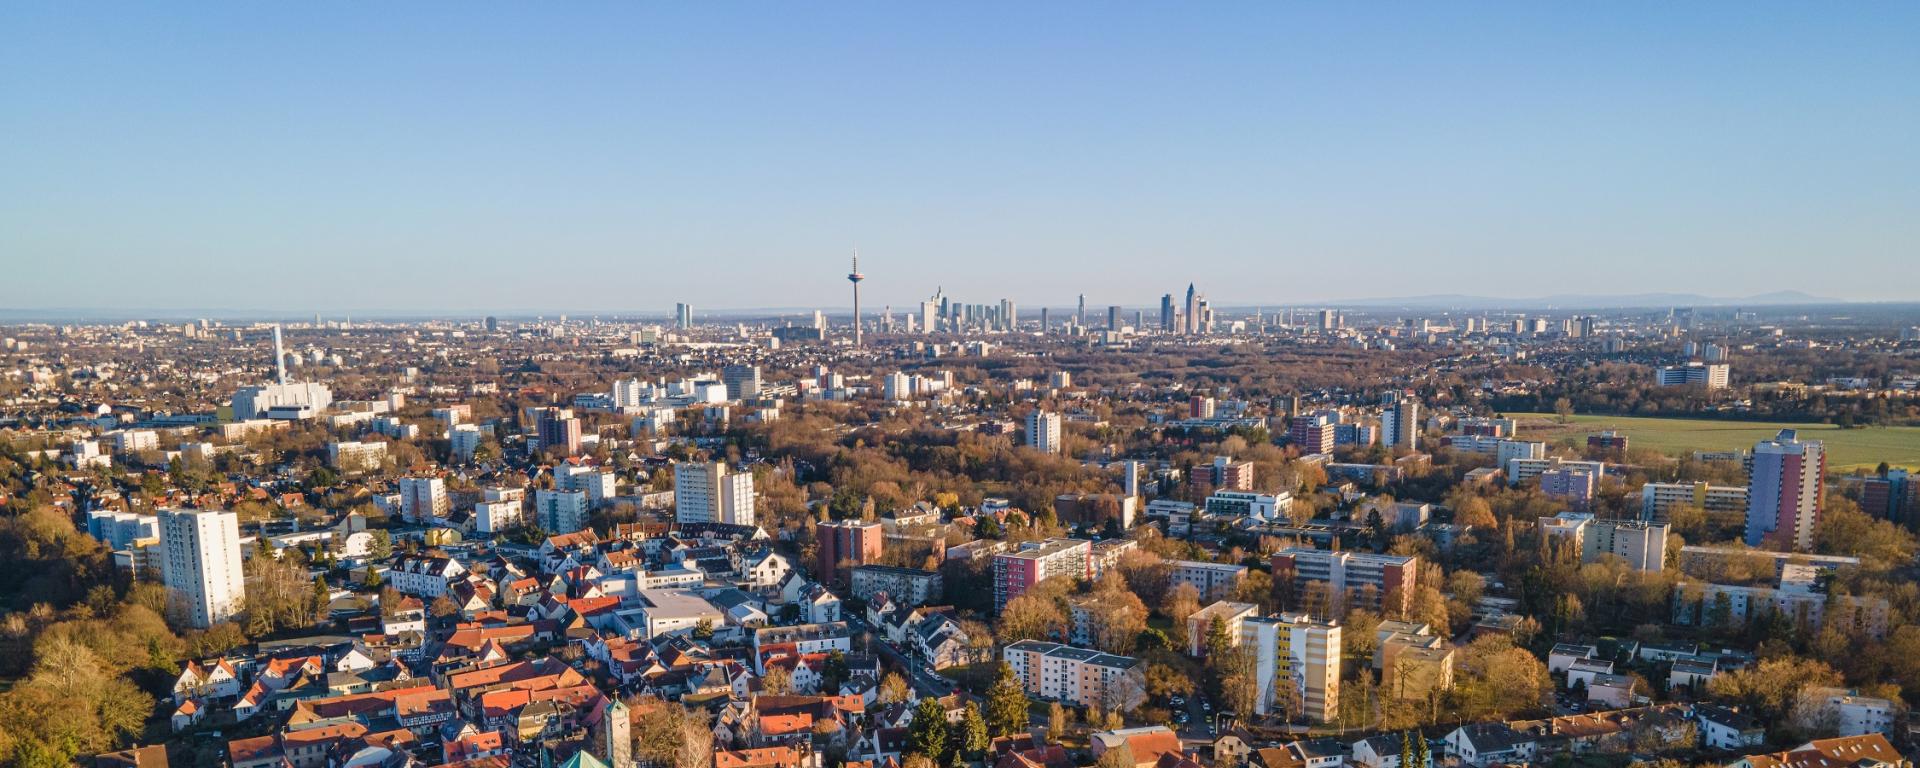 Blick aus der Vogelperspektive auf Frankfurt